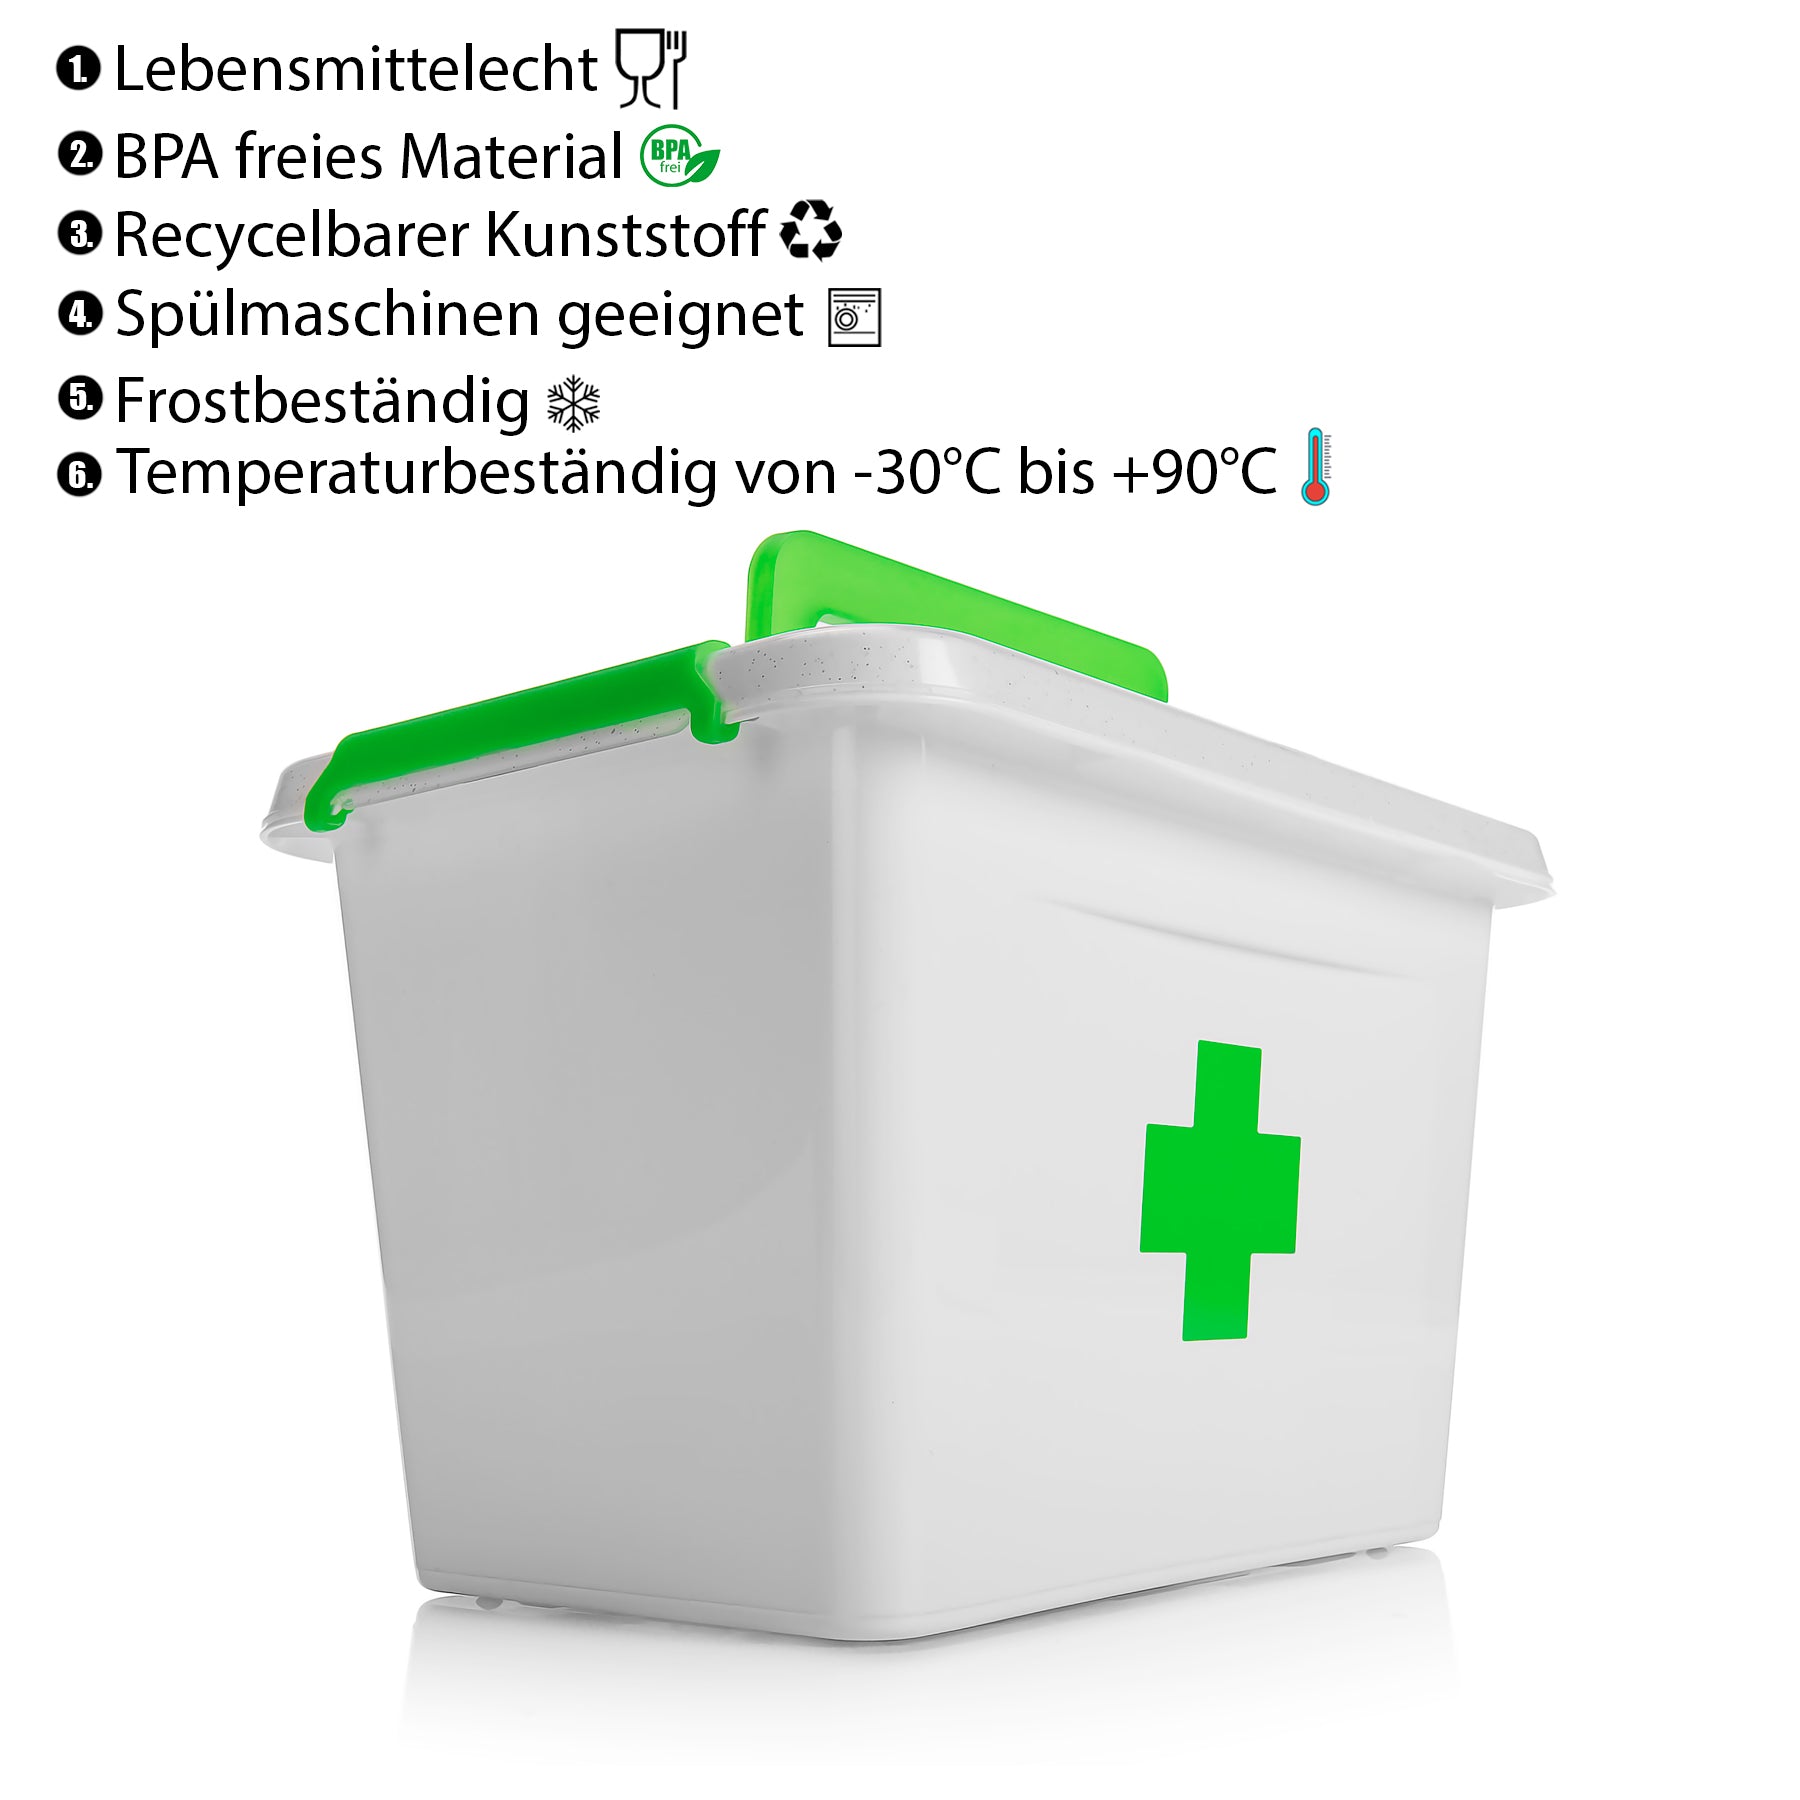 BigDean 2 Stück Medizinbox 6,5 L aus BPA-freiem & lebensmittelechtem Kunststoff – Medikamentenbox für Salben, Tabletten und Verbände – Koffer Organizer Made in Europe 2